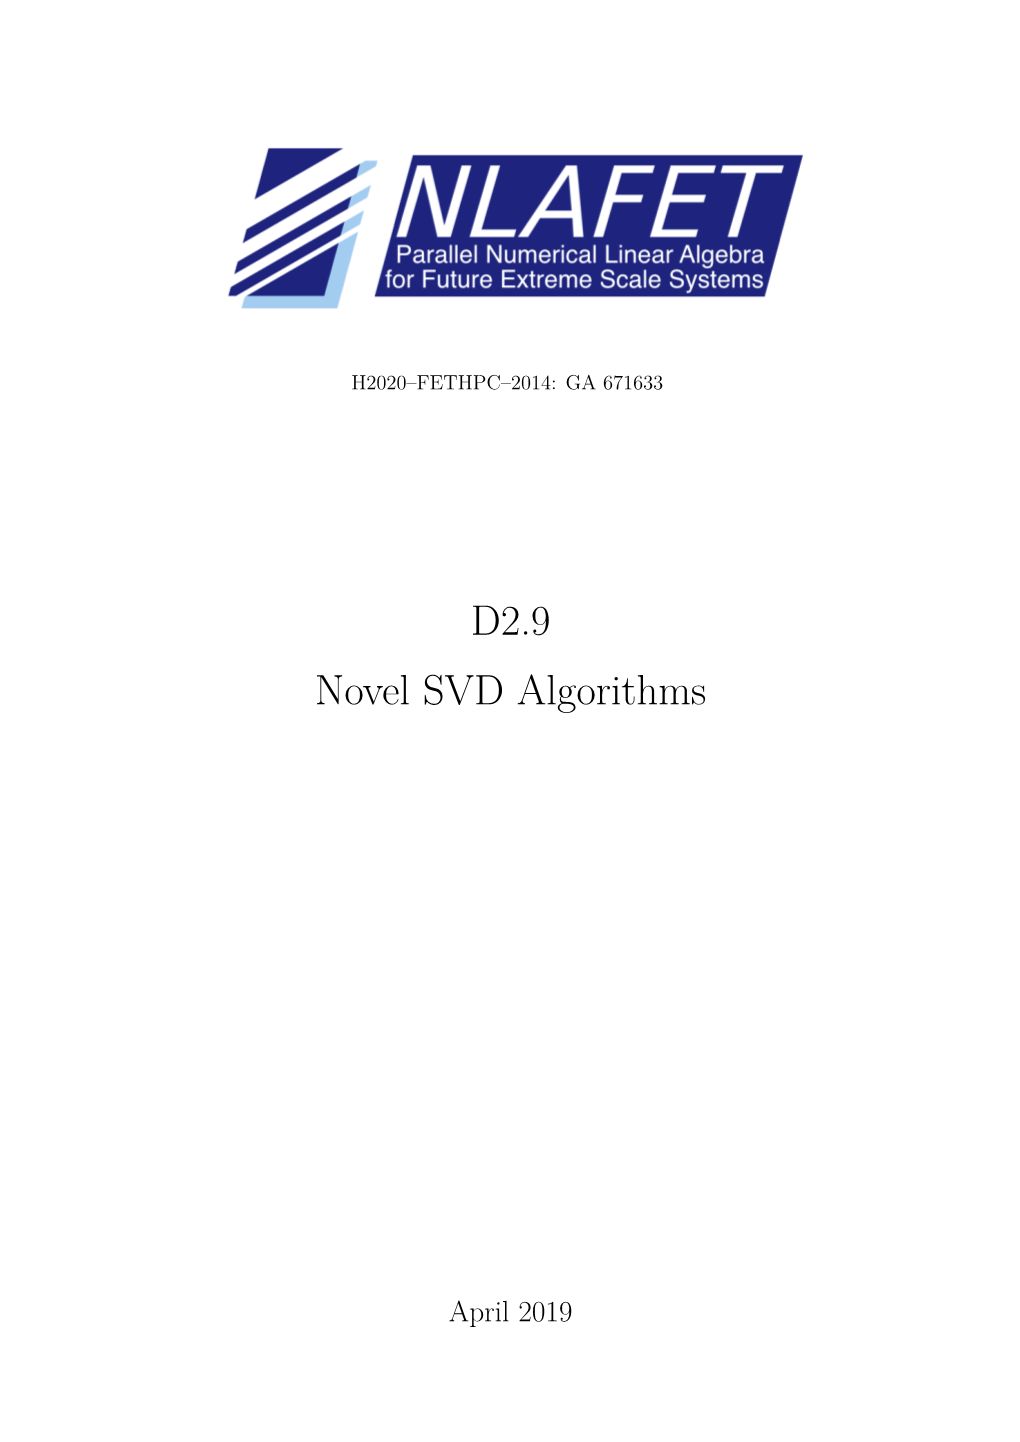 D2.9 Novel SVD Algorithms